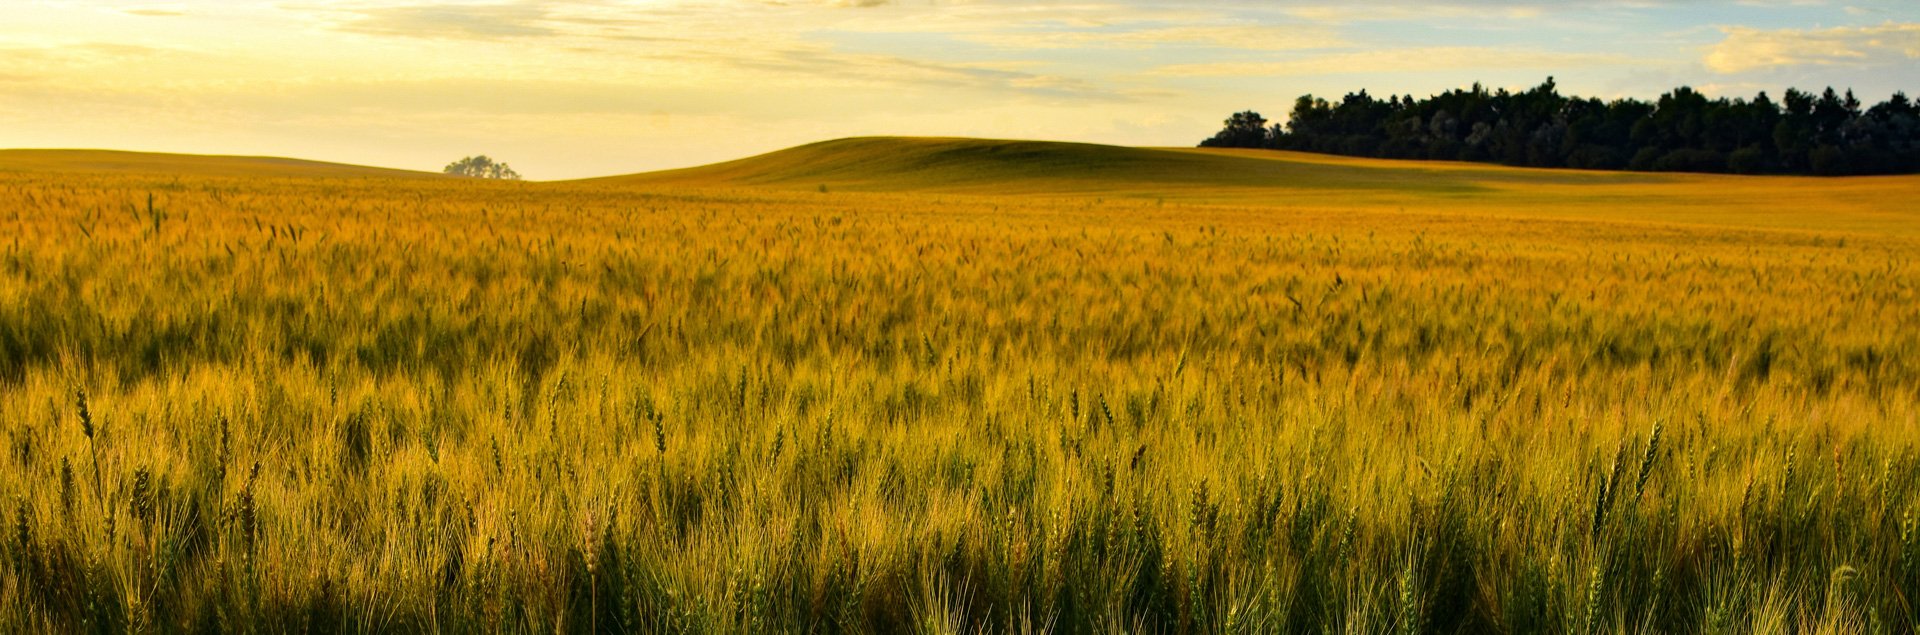 Ripening wheat in field in Western North Dakota